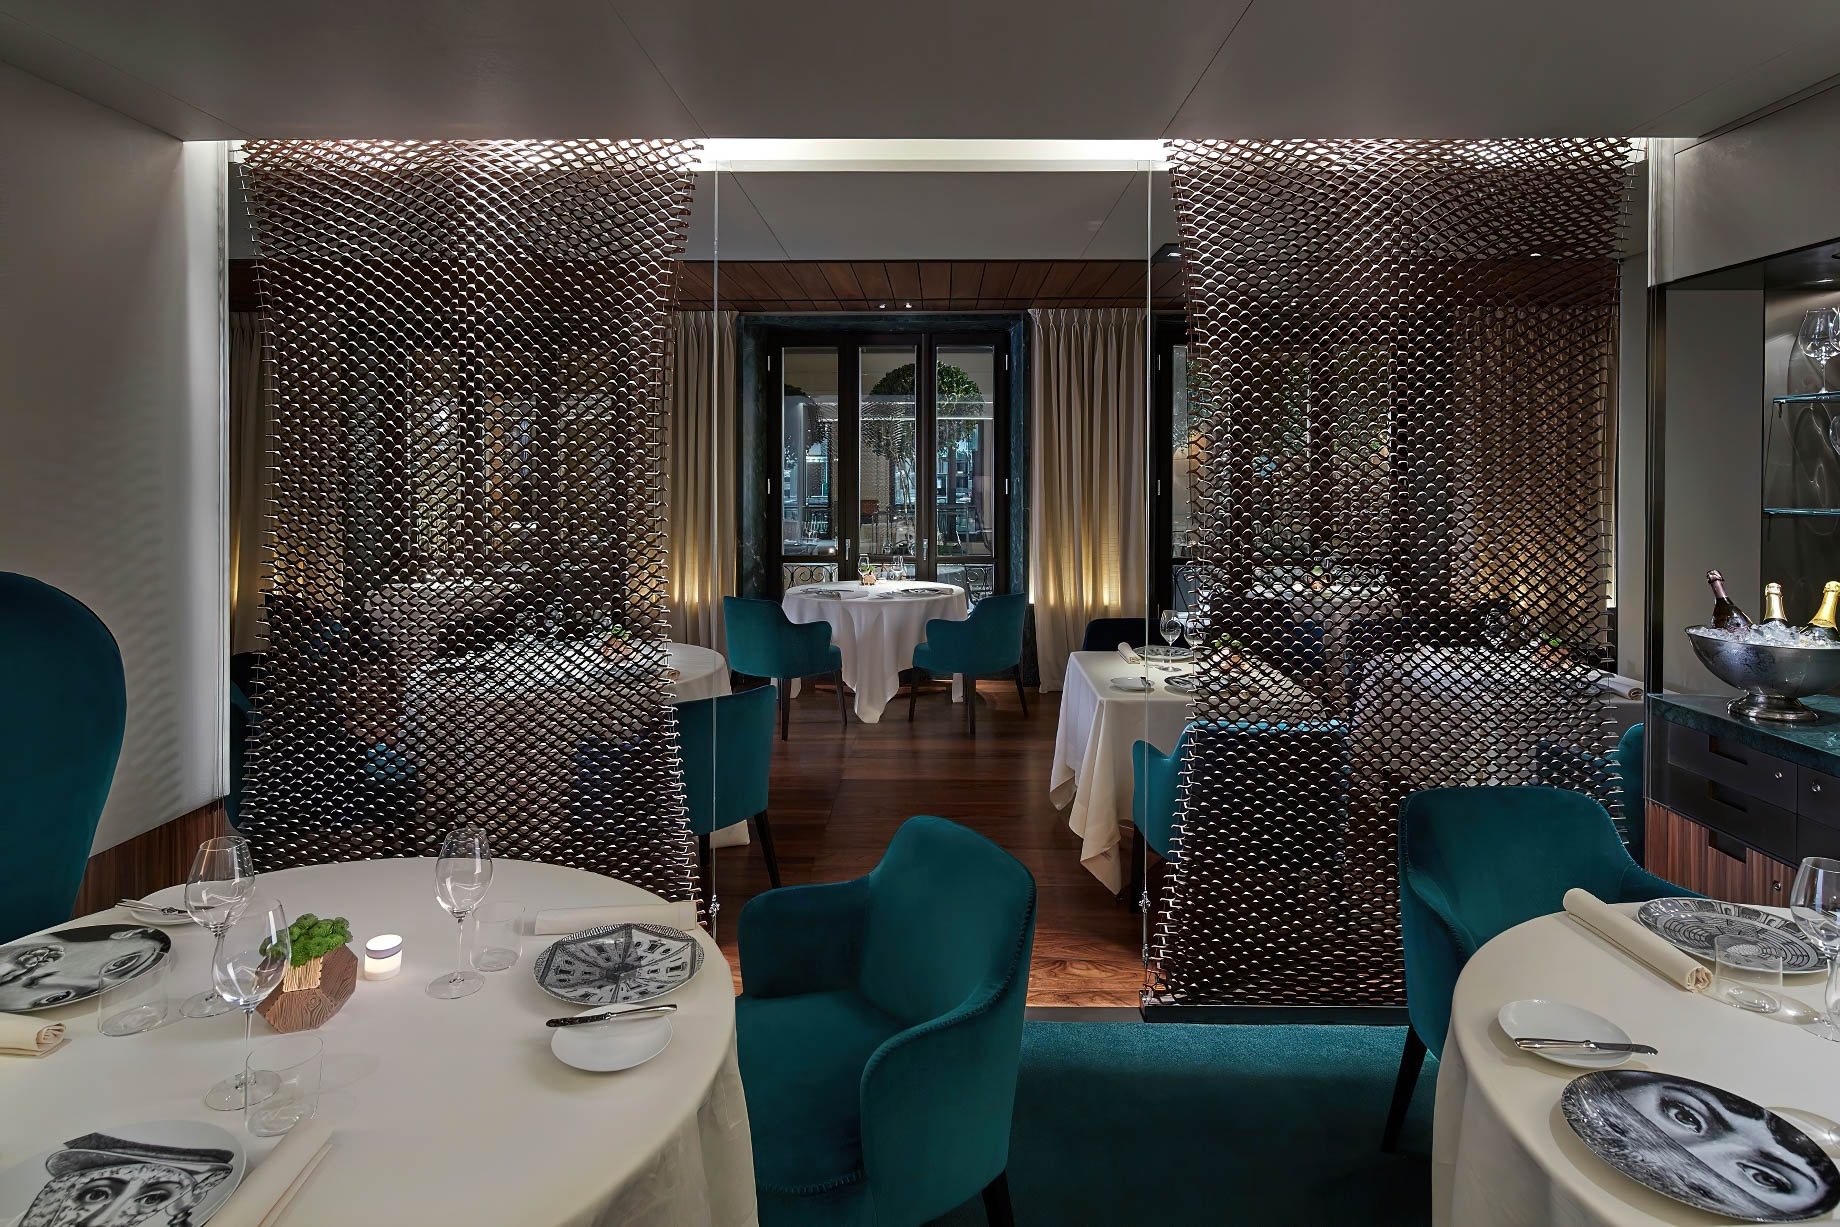 Mandarin Oriental, Milan Hotel - Milan, Italy - Seta Restaurant Dining Room